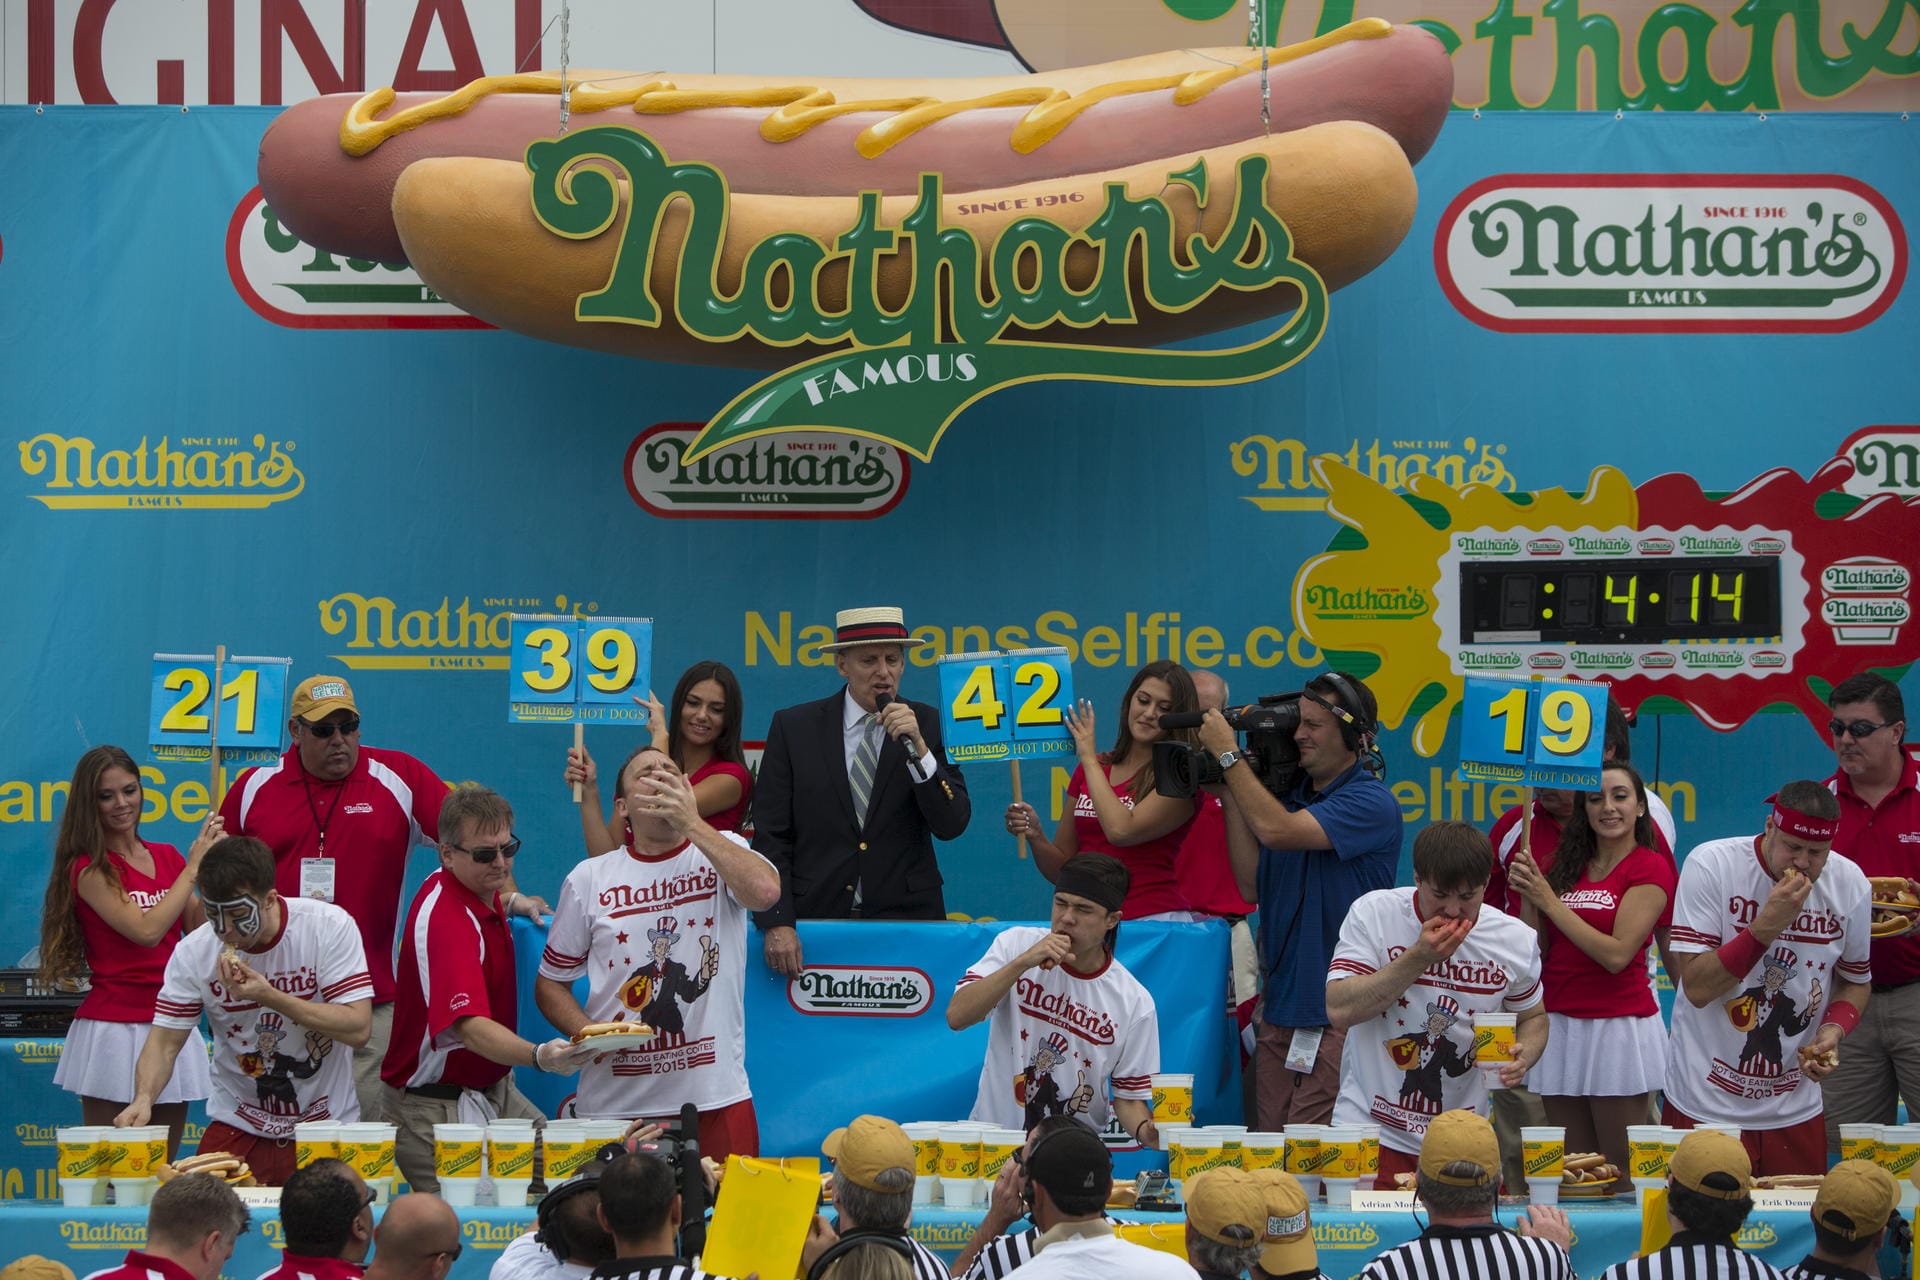 Jedes Jahr am 4 Juli stopfen und schlingen Hotdog-Fans bei "Nathan's" um die Wette.